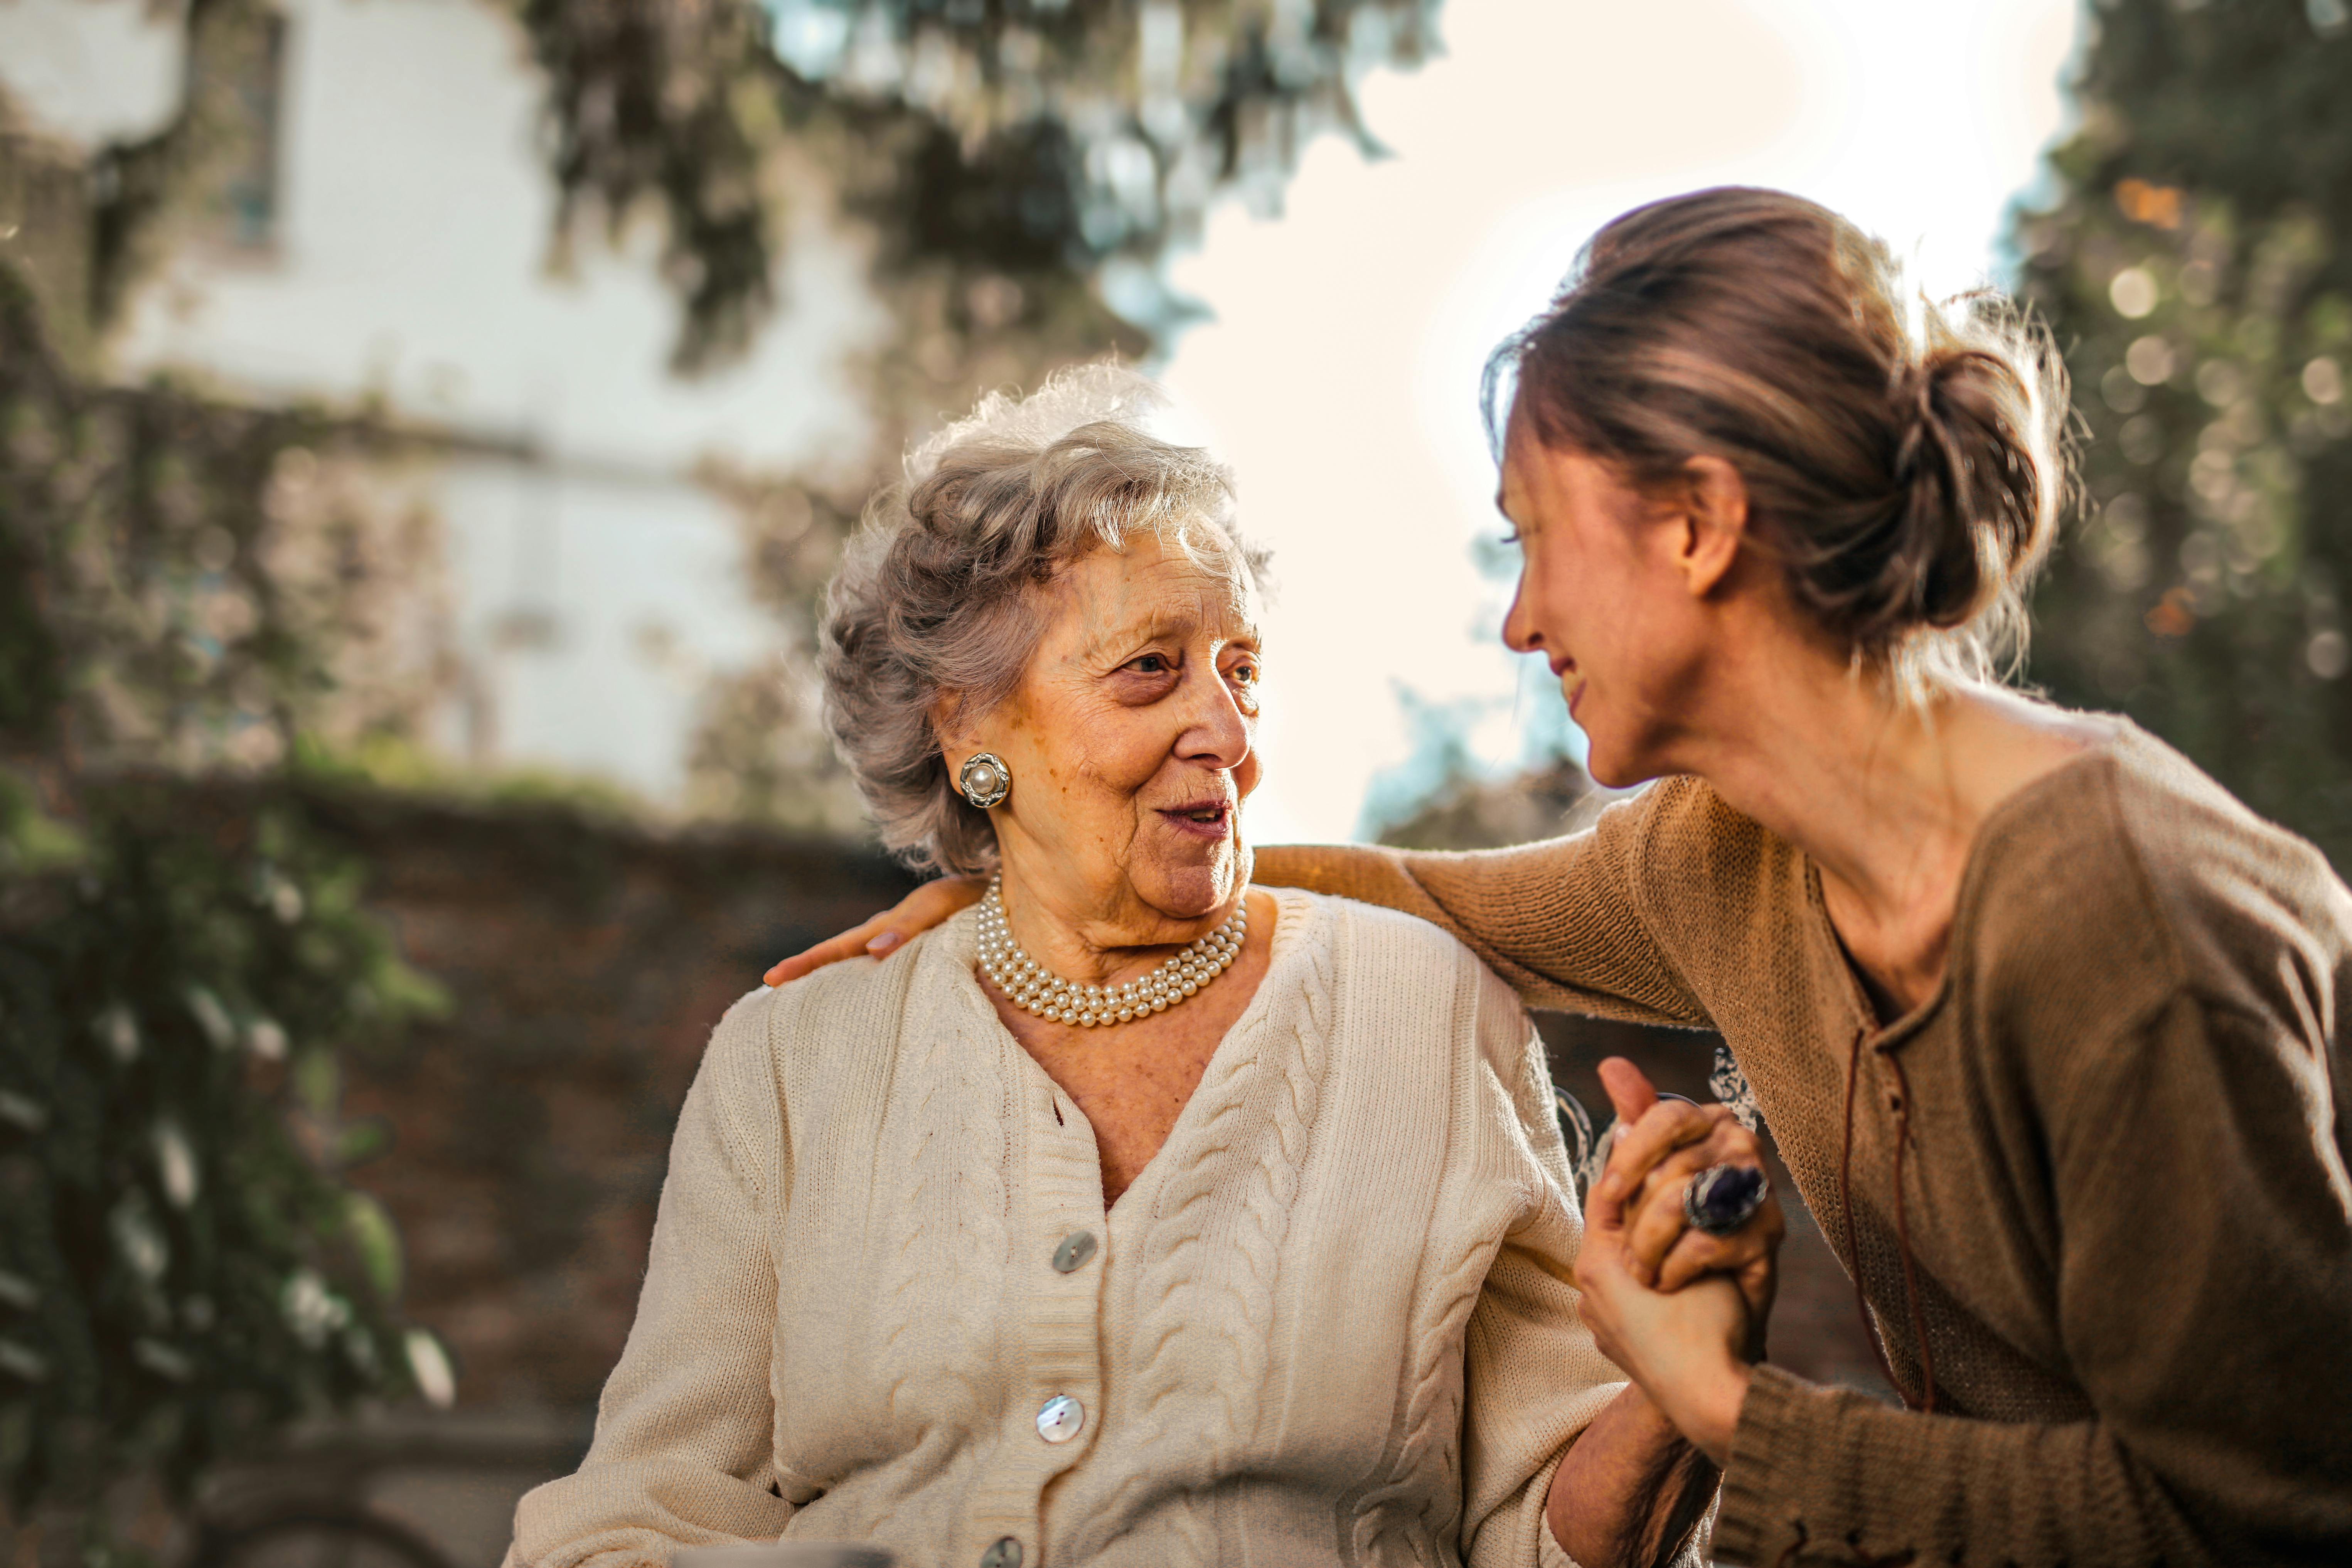 Une femme plus âgée et une femme plus jeune conversent joyeusement | Source : Pexels